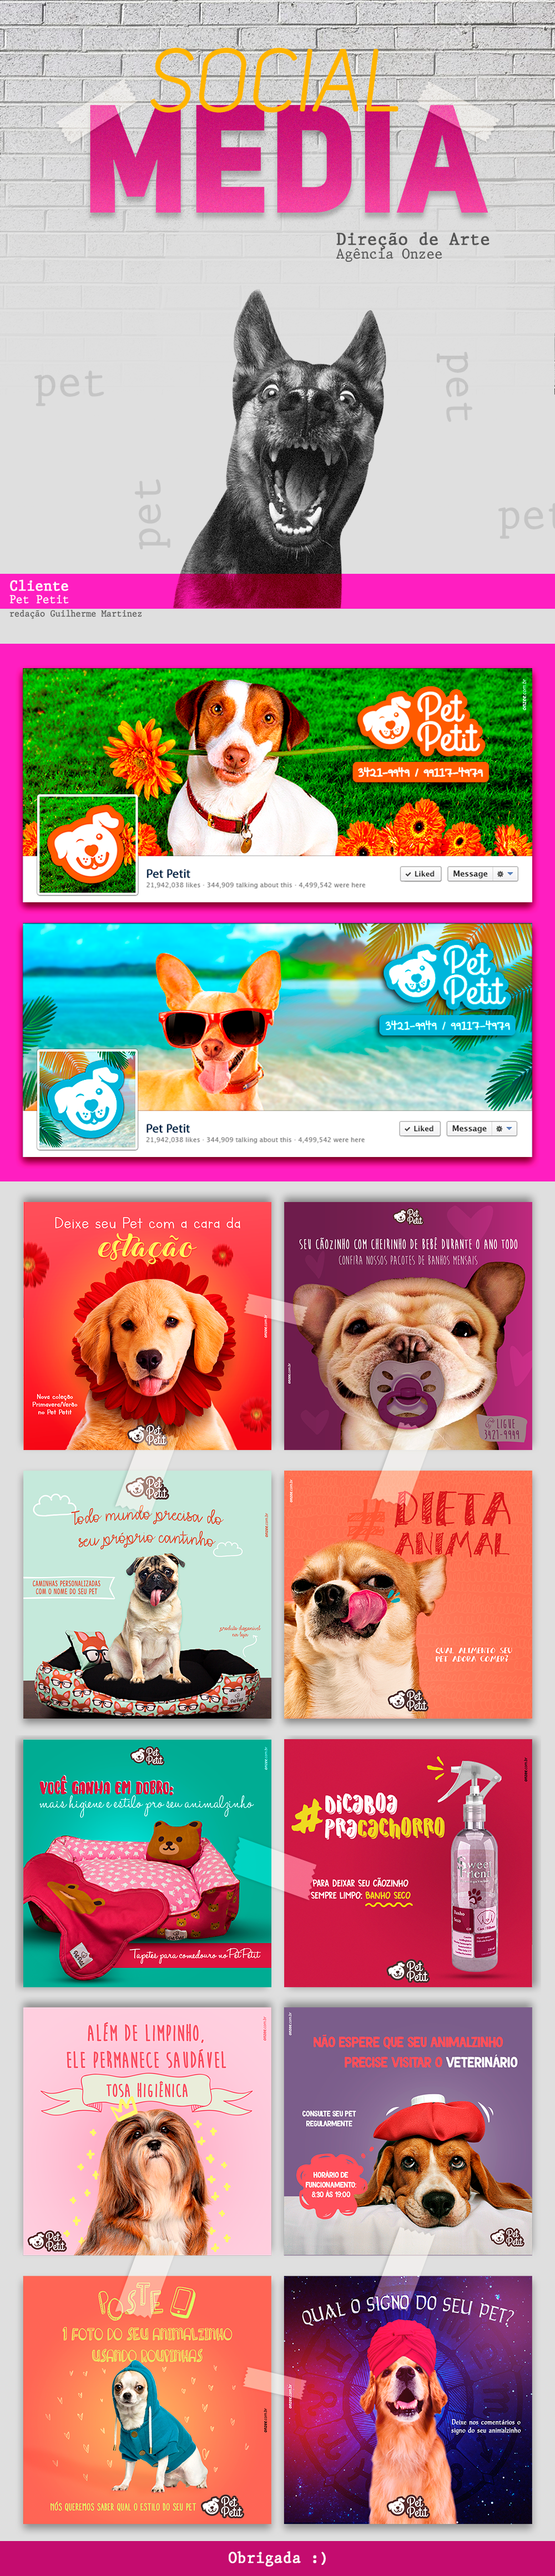 social midia social media Direção de arte Art Director Pet dog cachorros pet shop animais clinica veterinaria